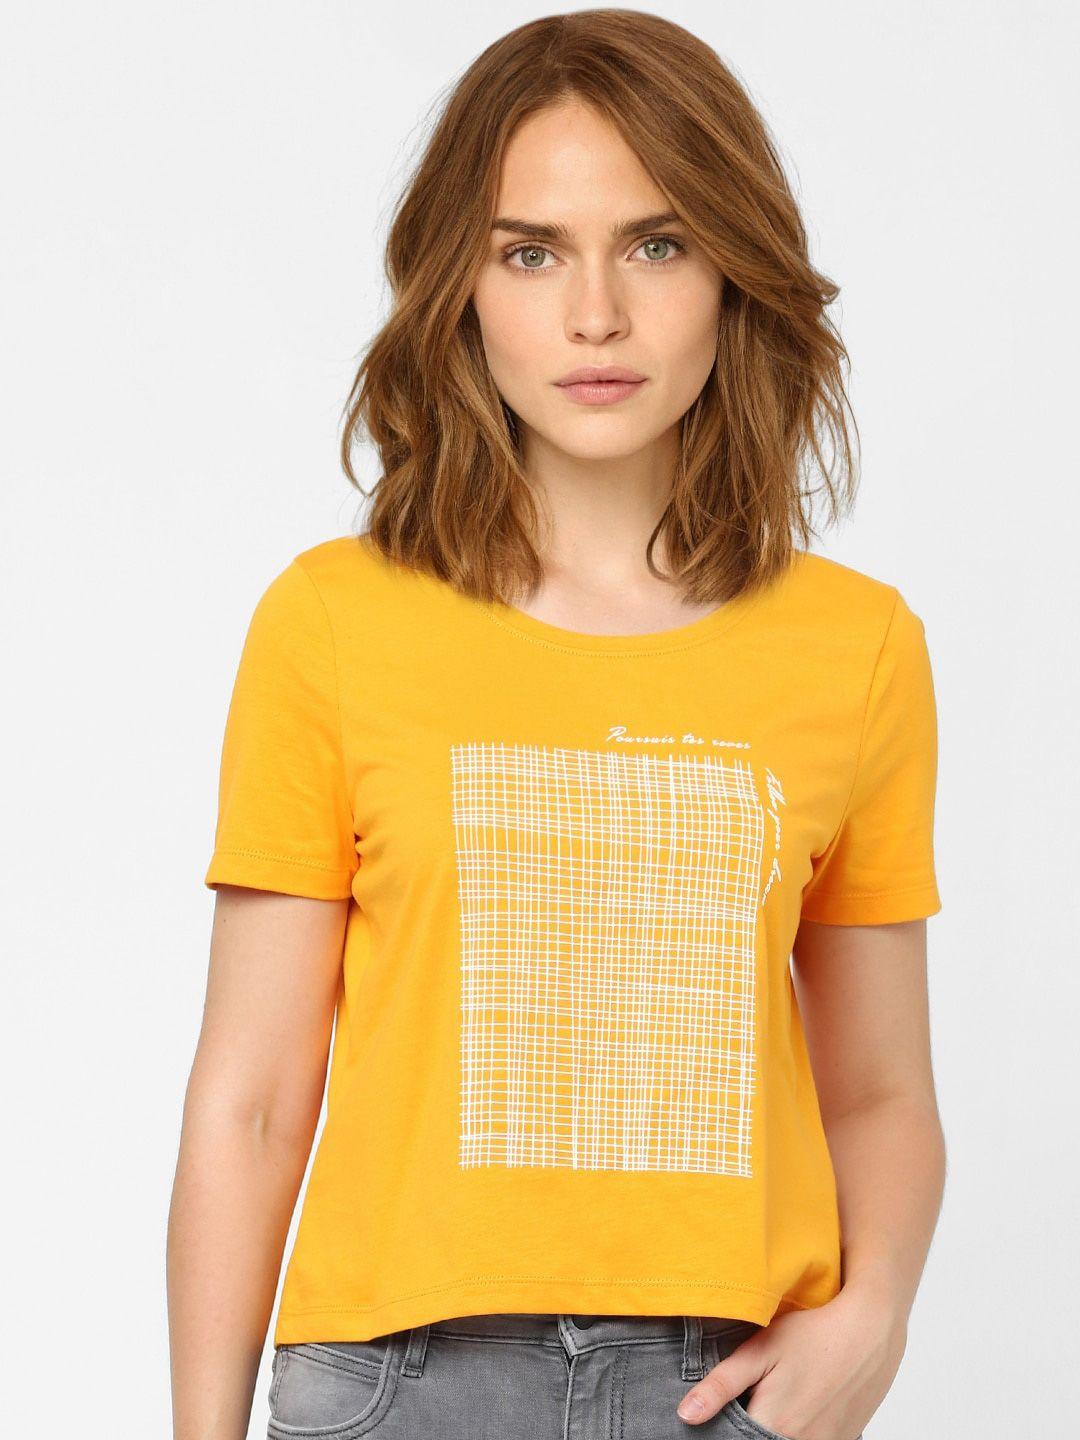 vero moda women yellow printed t-shirt